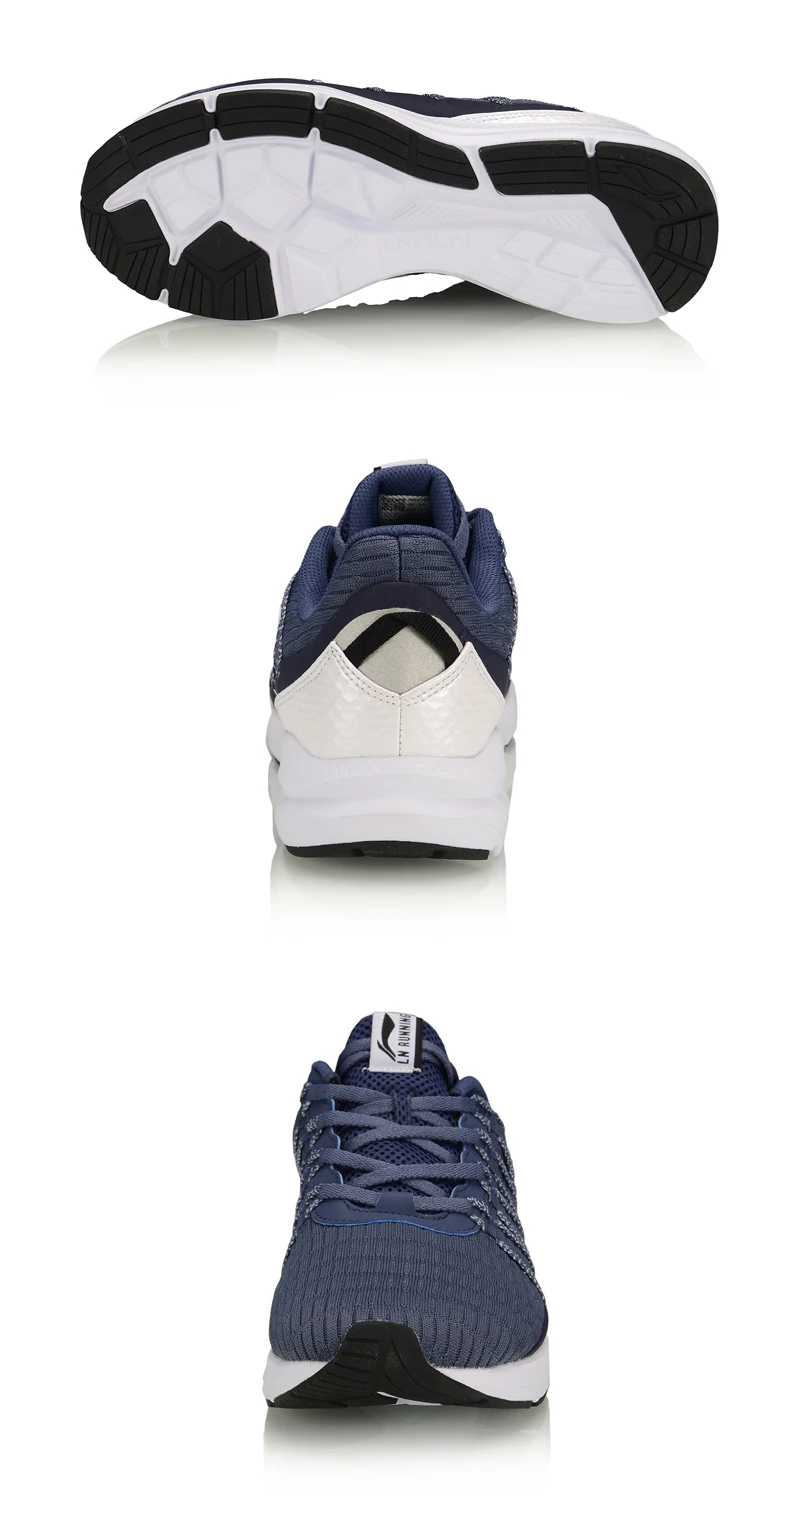 Li-Ning/мужские кроссовки для бега с реакторной подушкой; фитнес-светильник; удобная спортивная обувь Li-Ning; кроссовки; ARHP193 XYP952